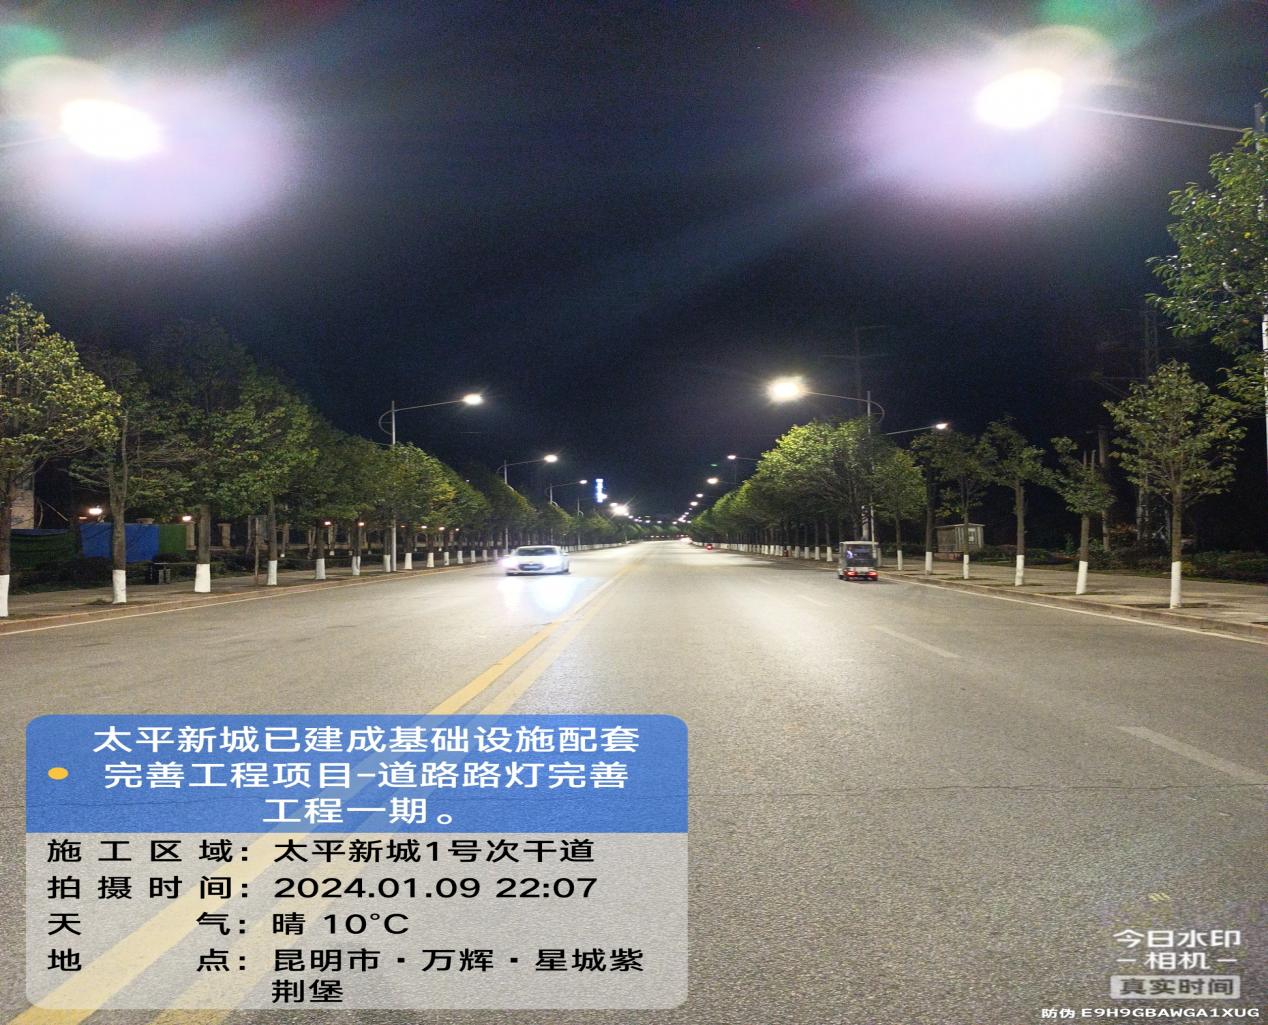 太平新城已建成基础设施配套完善工程项目-道路路灯箱变完善工程一期项目顺利完工